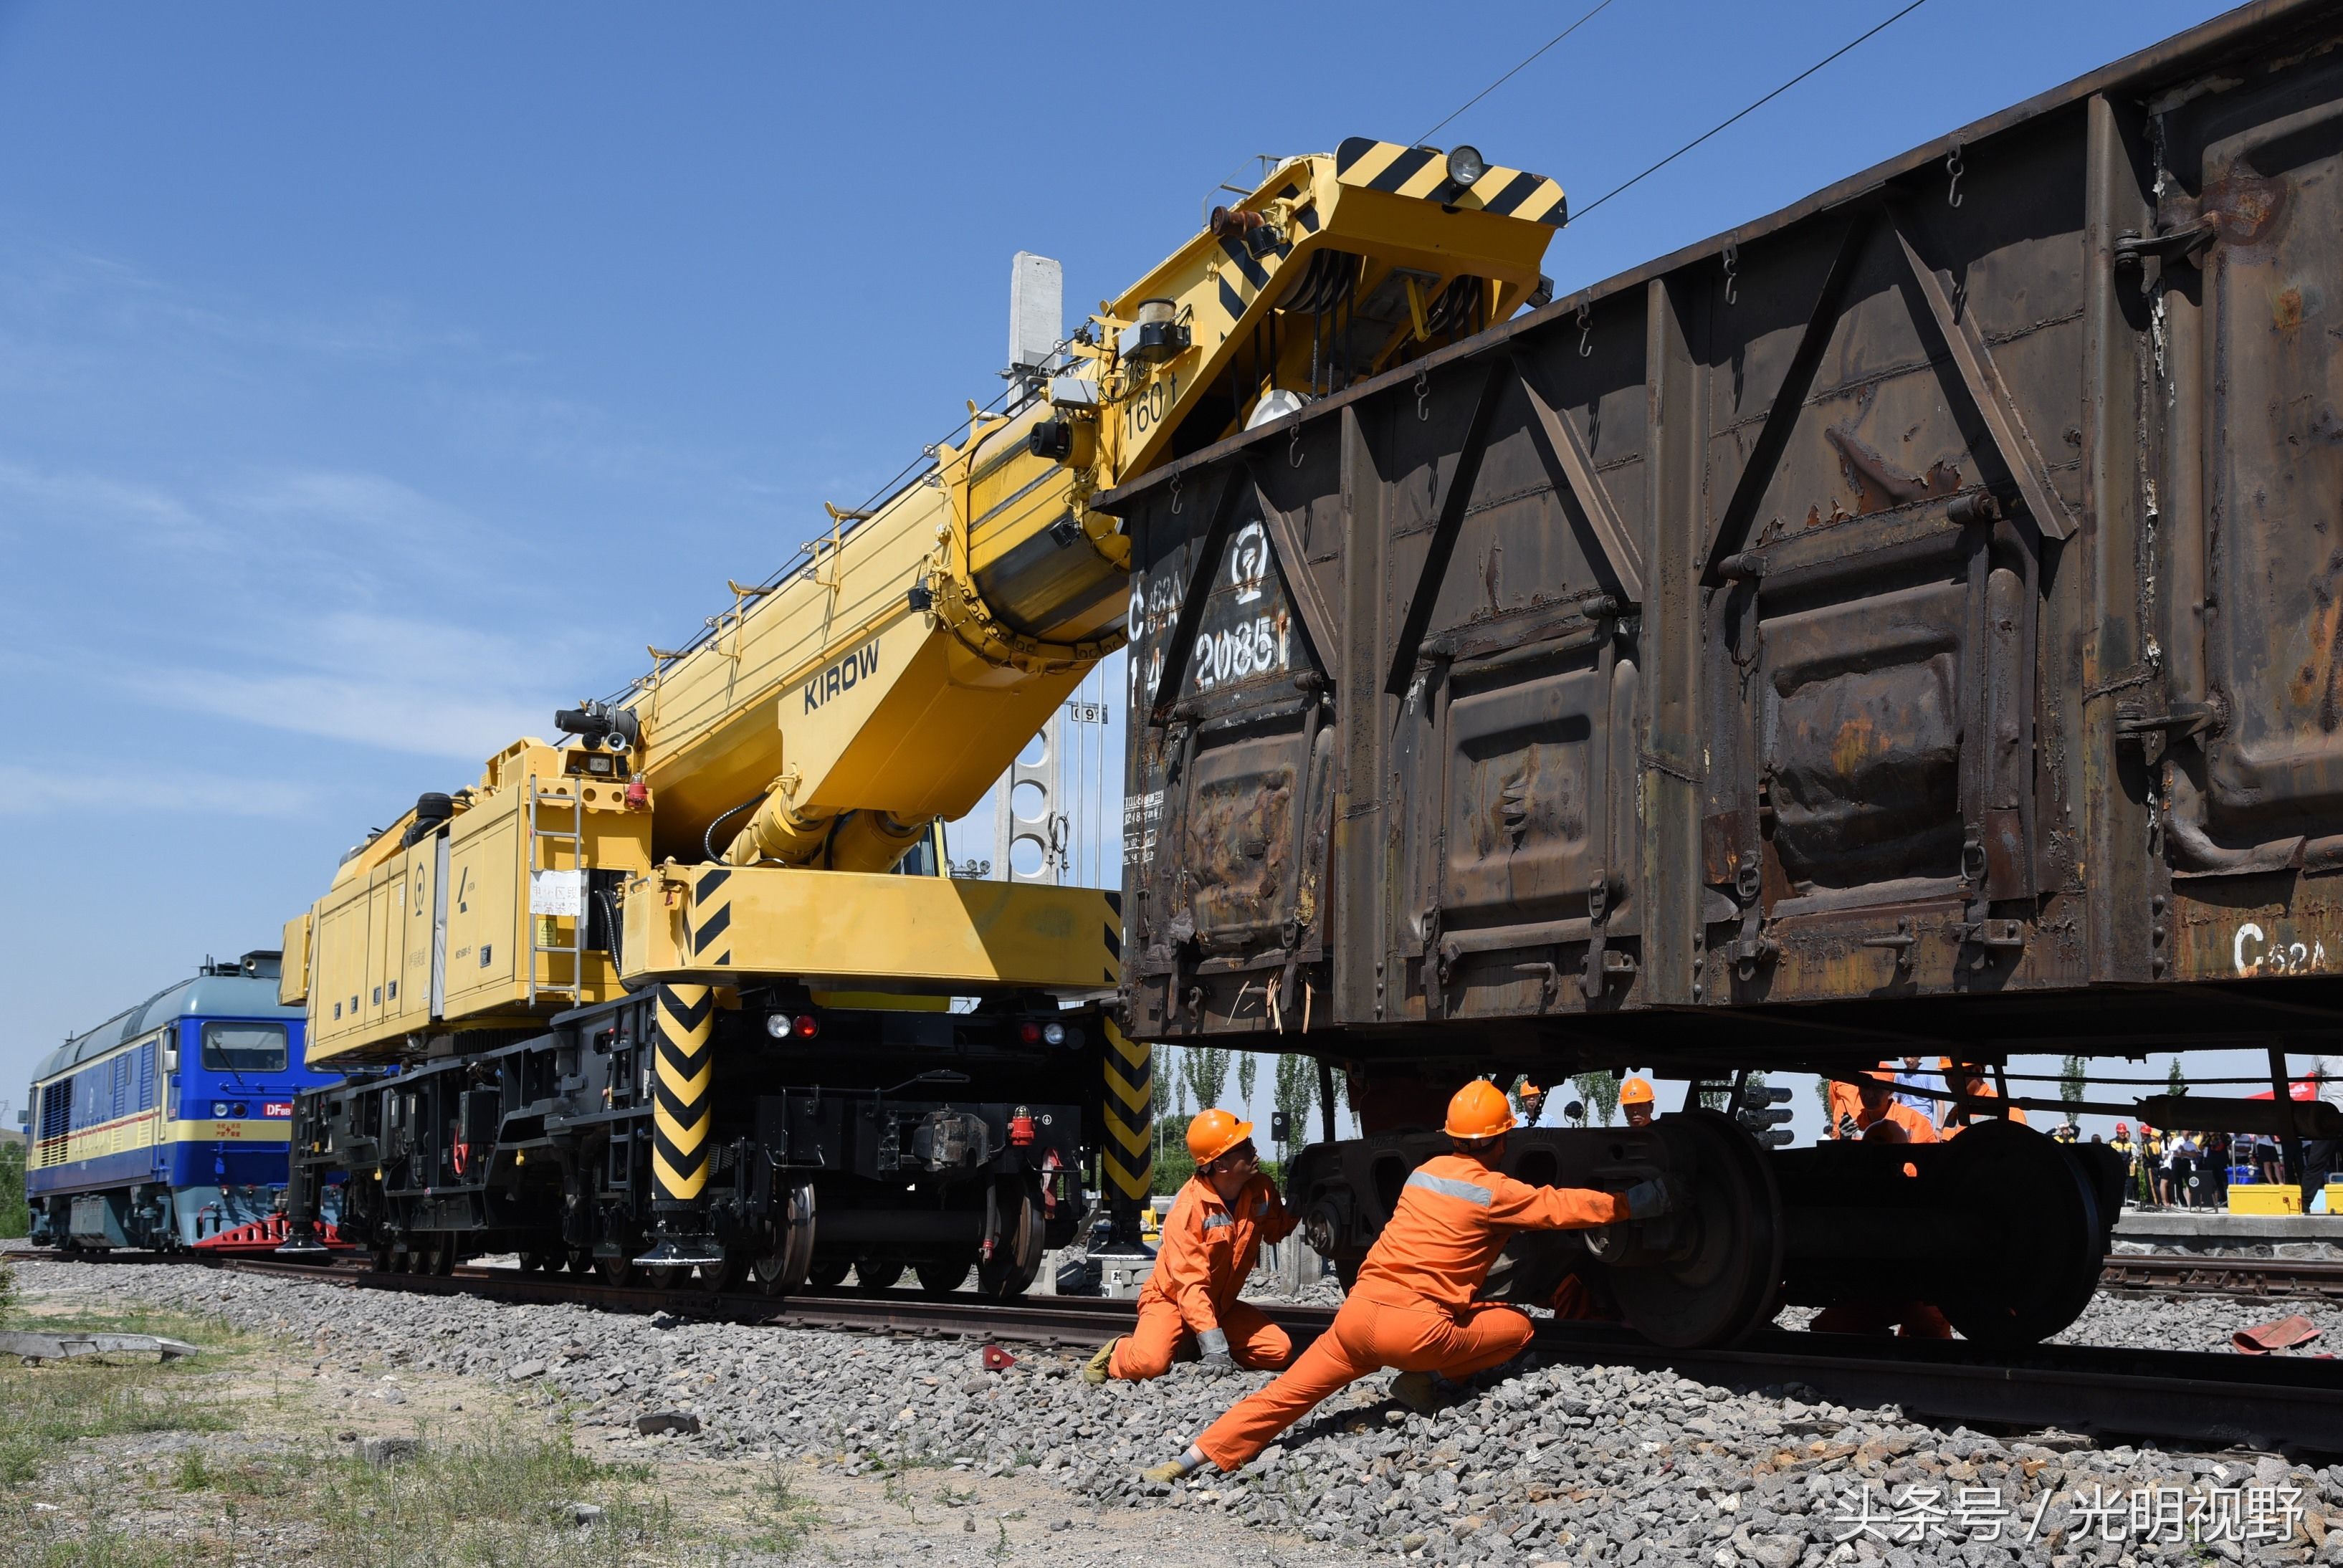 内蒙古乌兰察布:万吨列车脱轨,唐呼铁路上演实